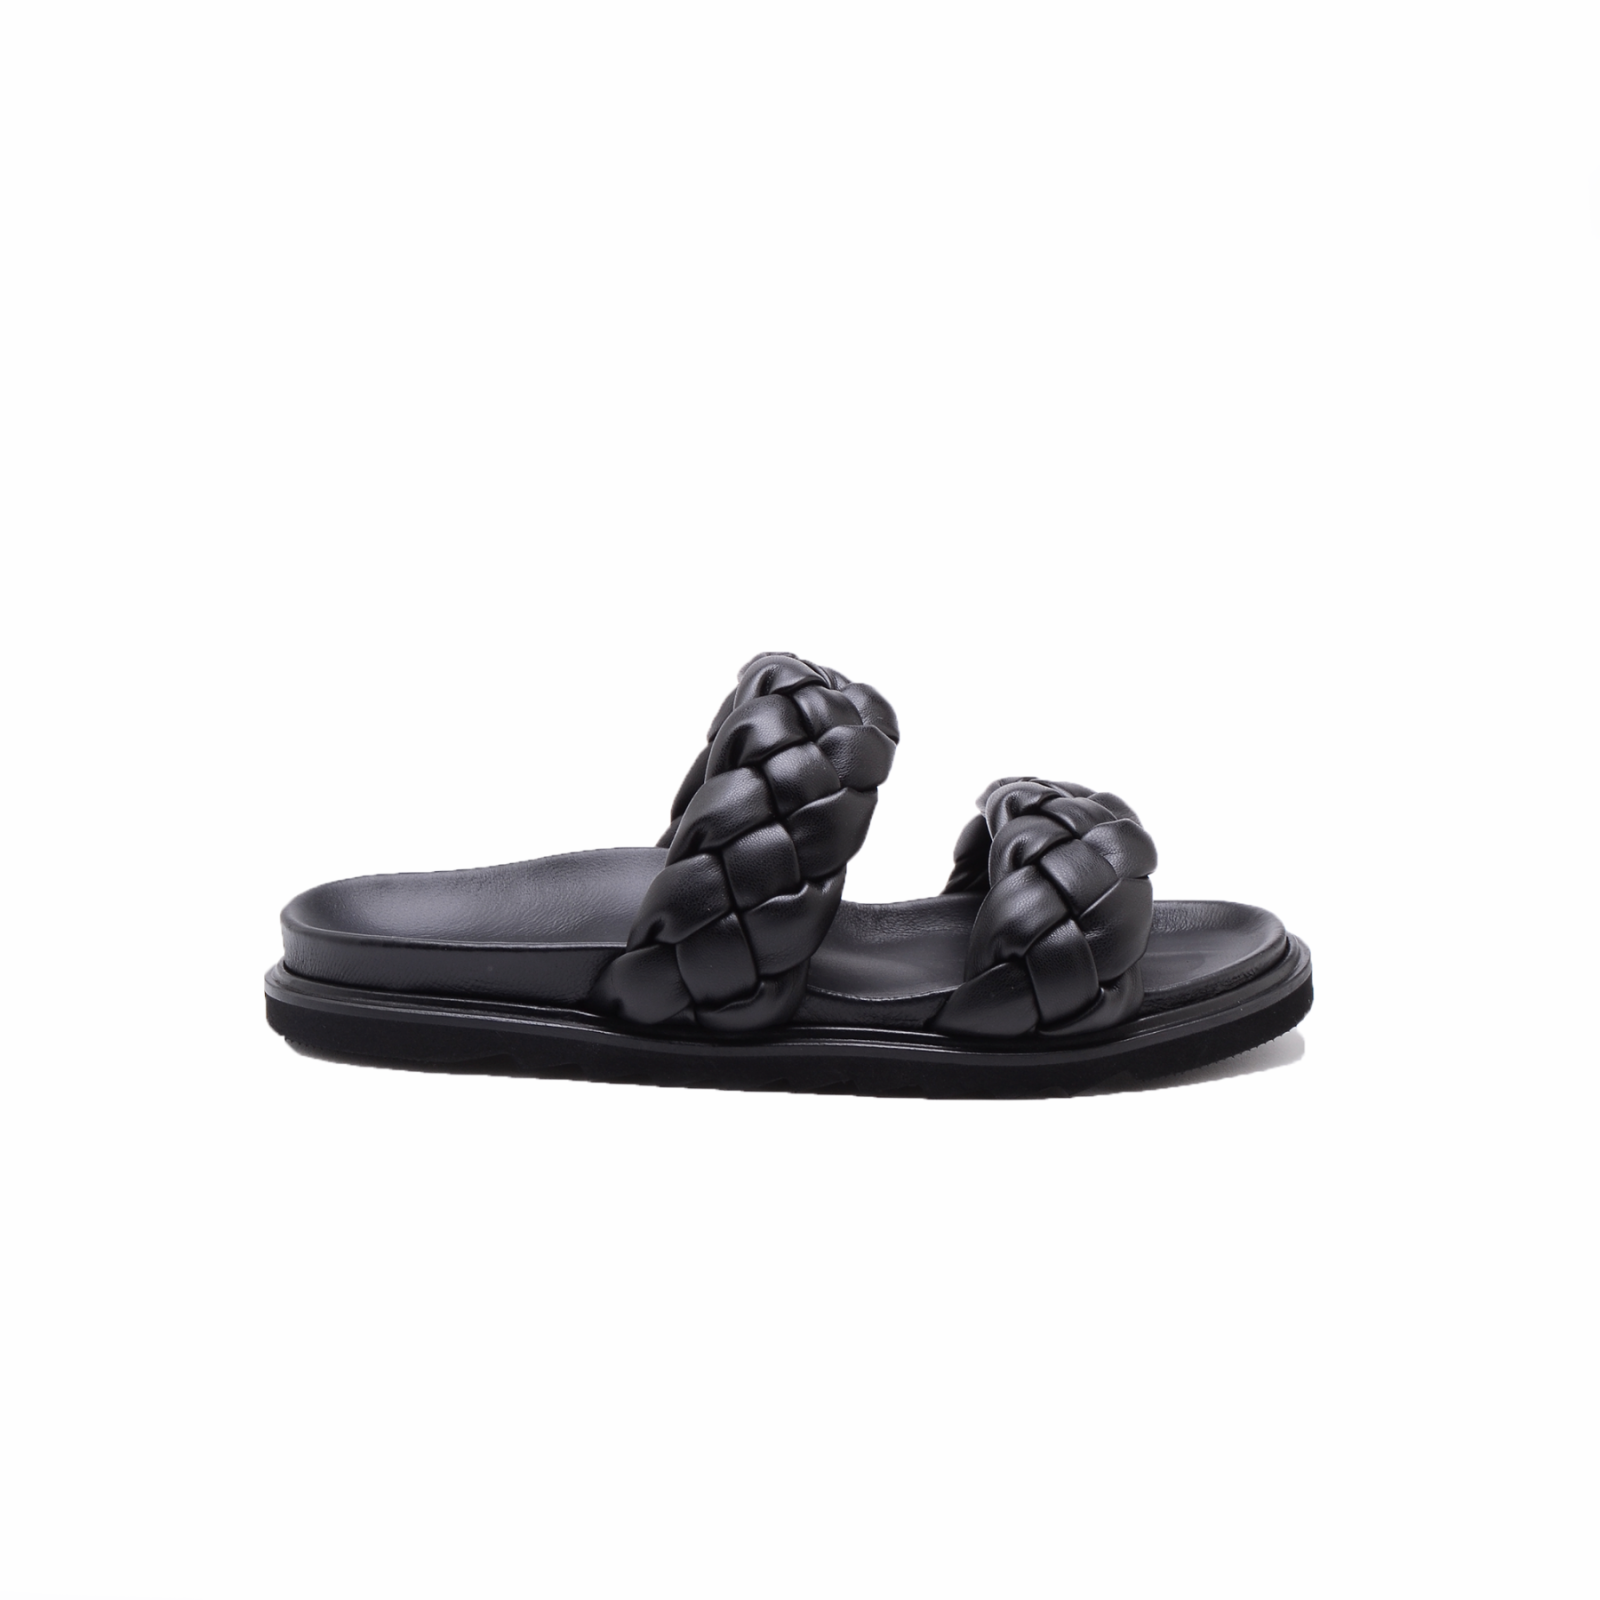 KMB Shoes - Sandale BRONX - black 7